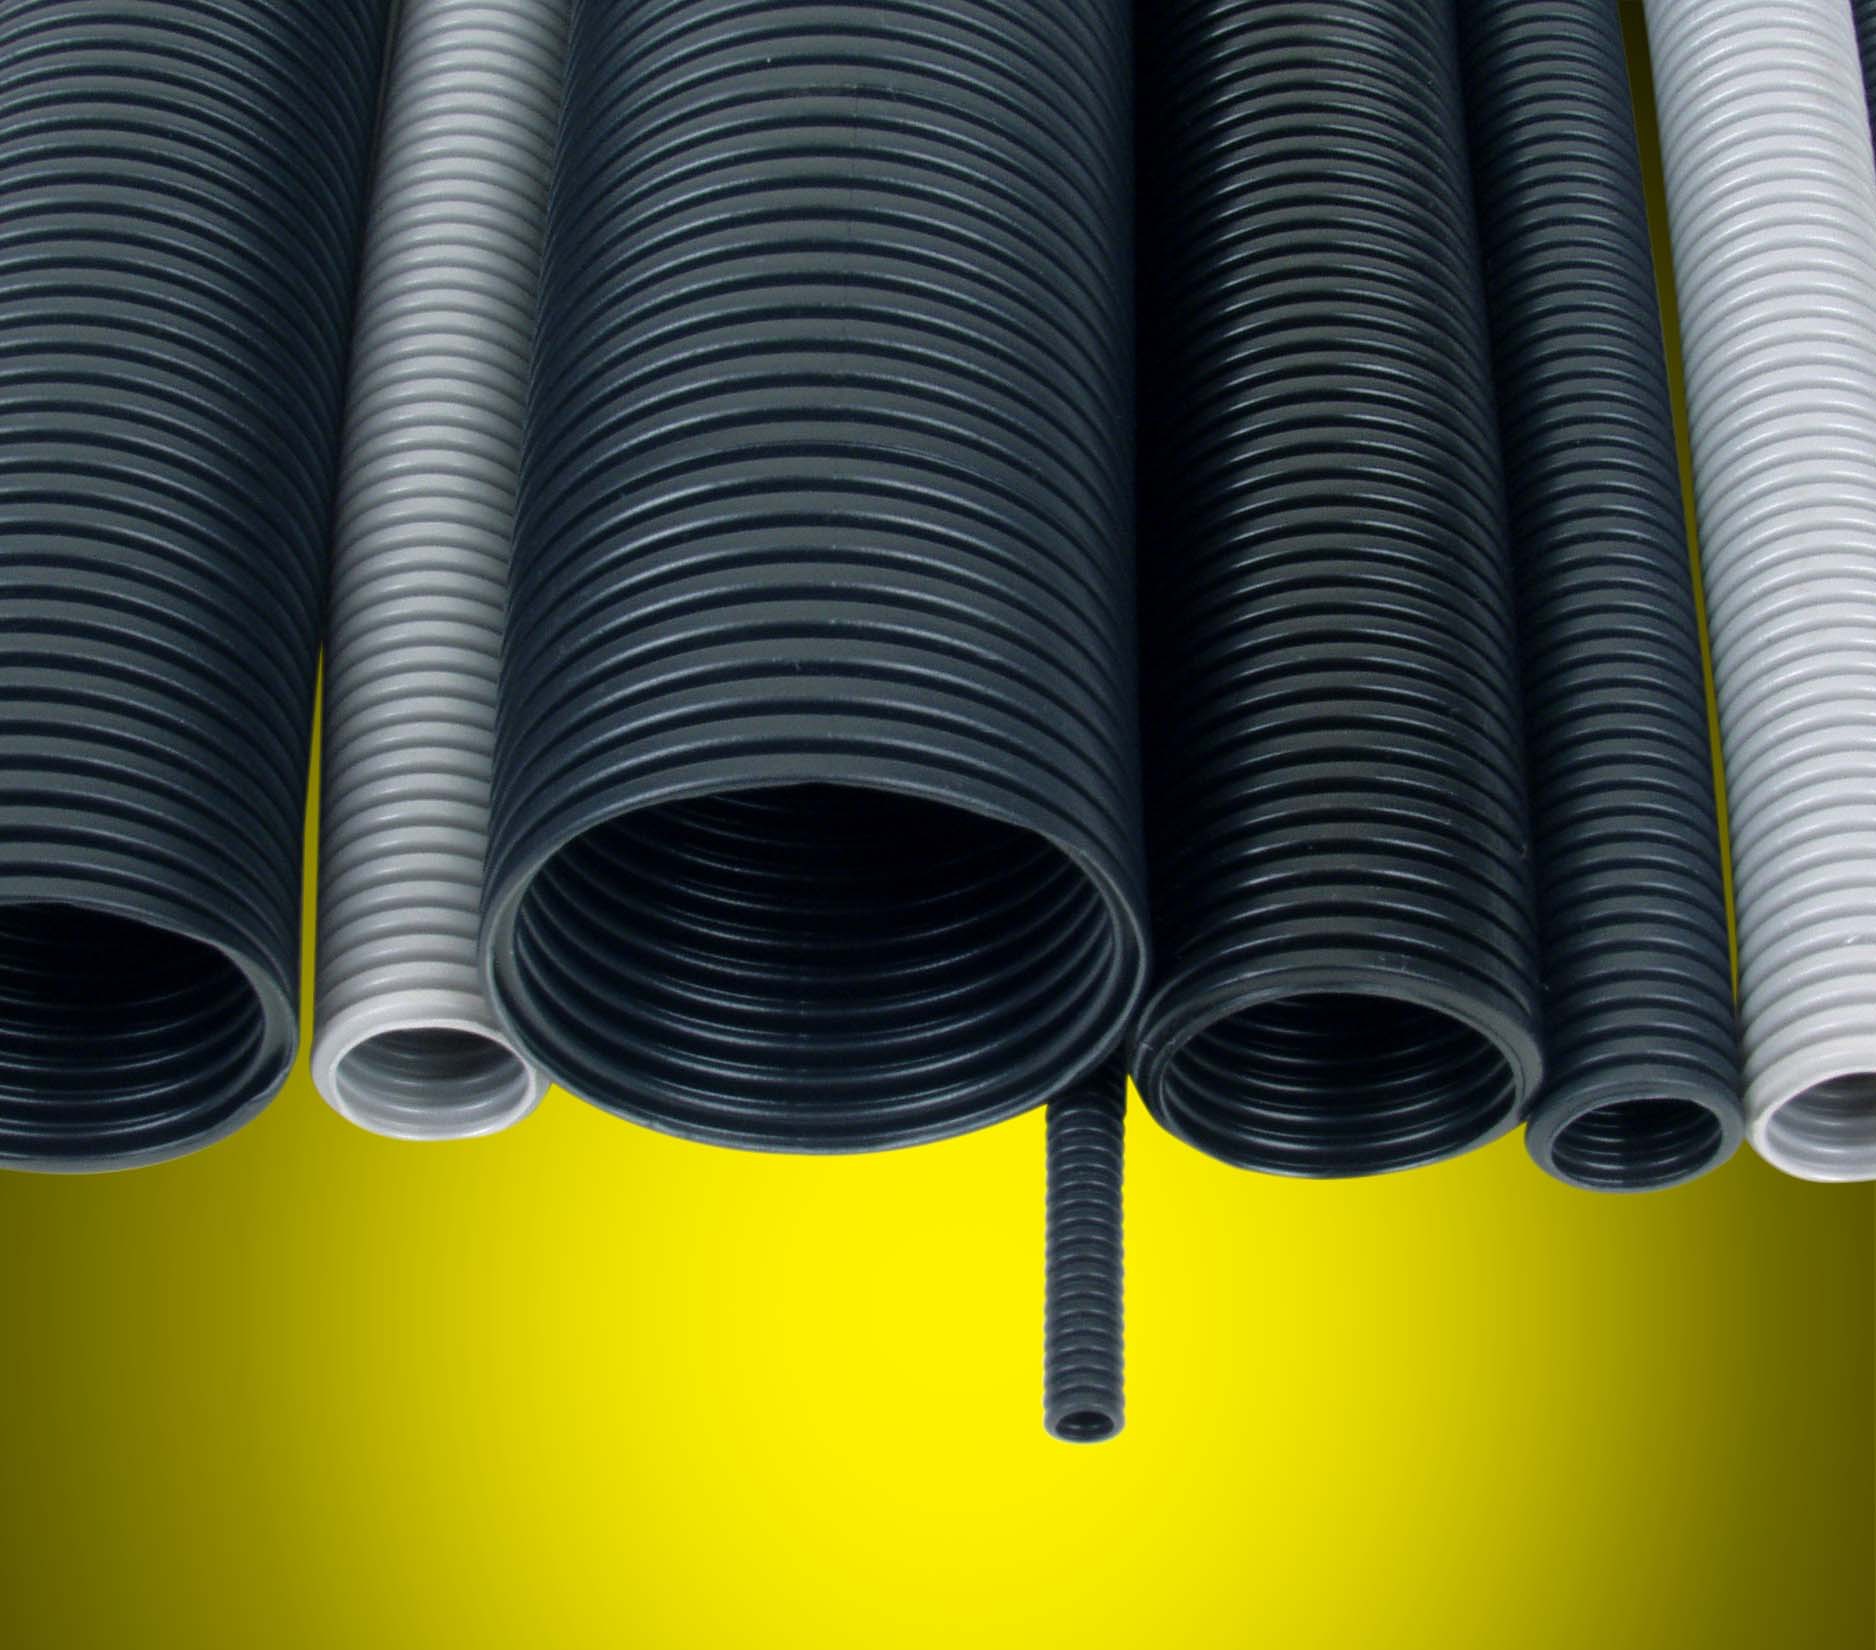 广州邦泰电气厂家生产环保阻燃线束PP塑料波纹软管/浪管PB-21.2L